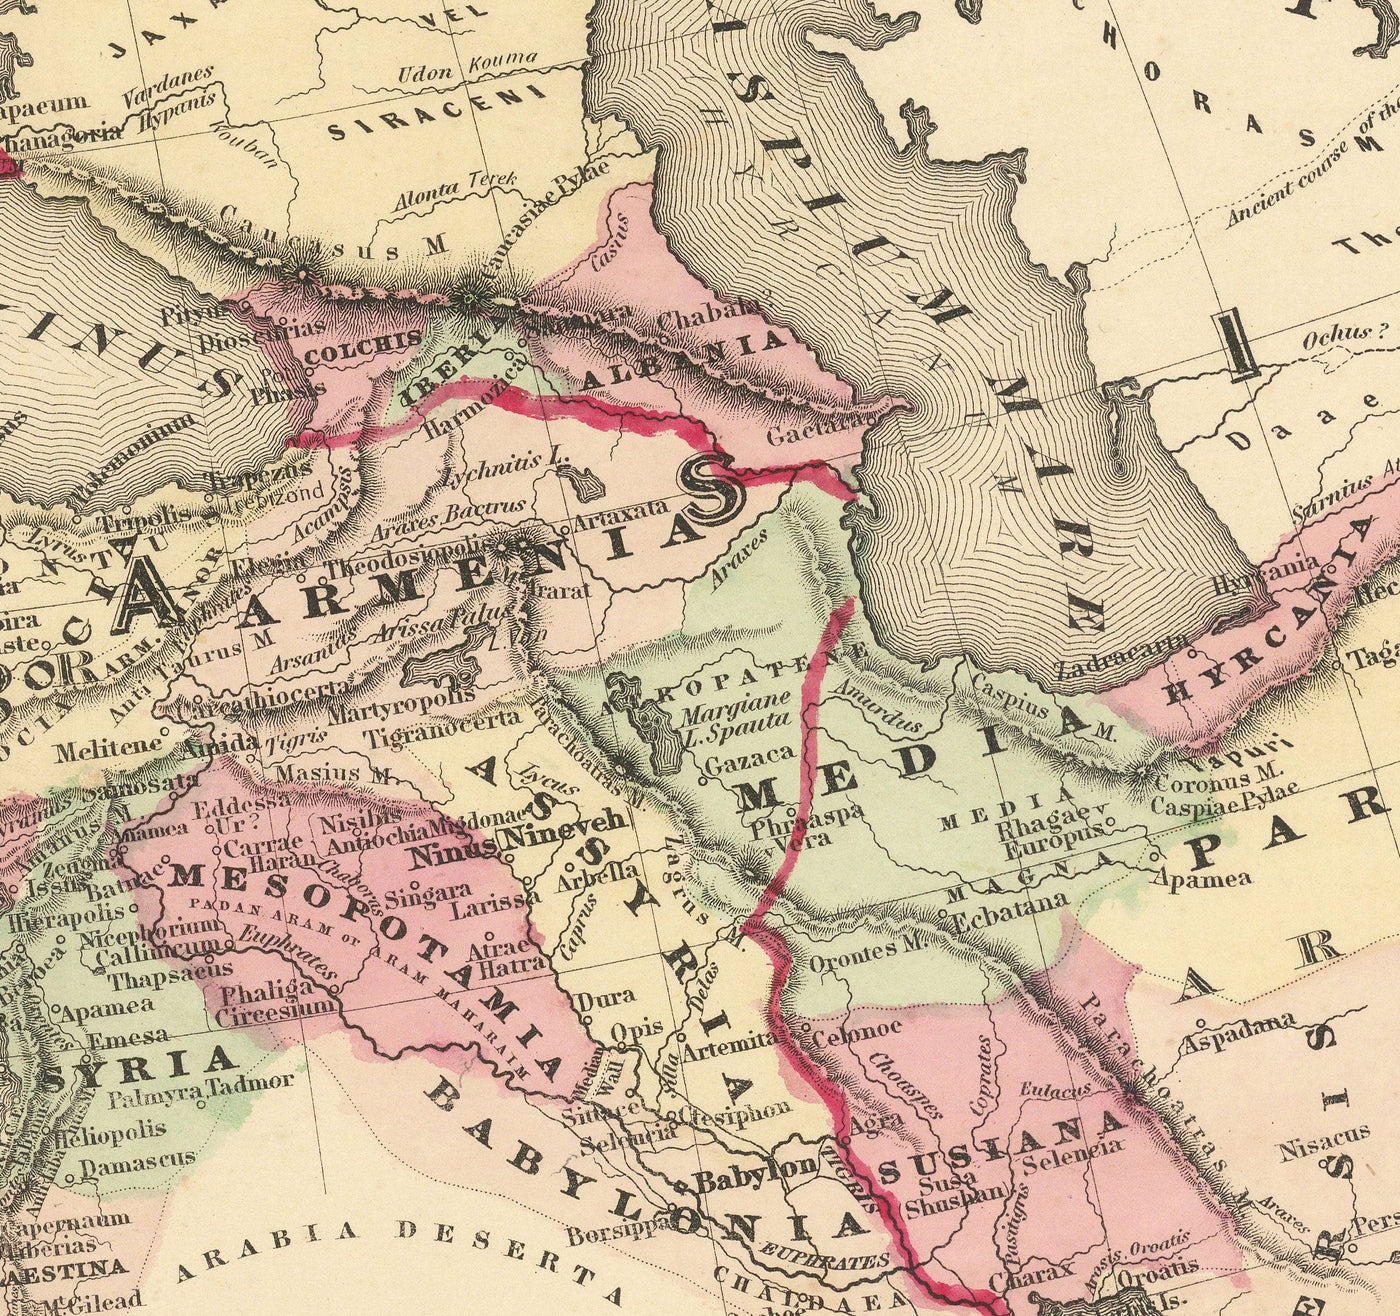 Mapa del viejo imperio romano de Europa, África y Asia por Johnson y Browning - Carta histórica del Imperio Bizantino